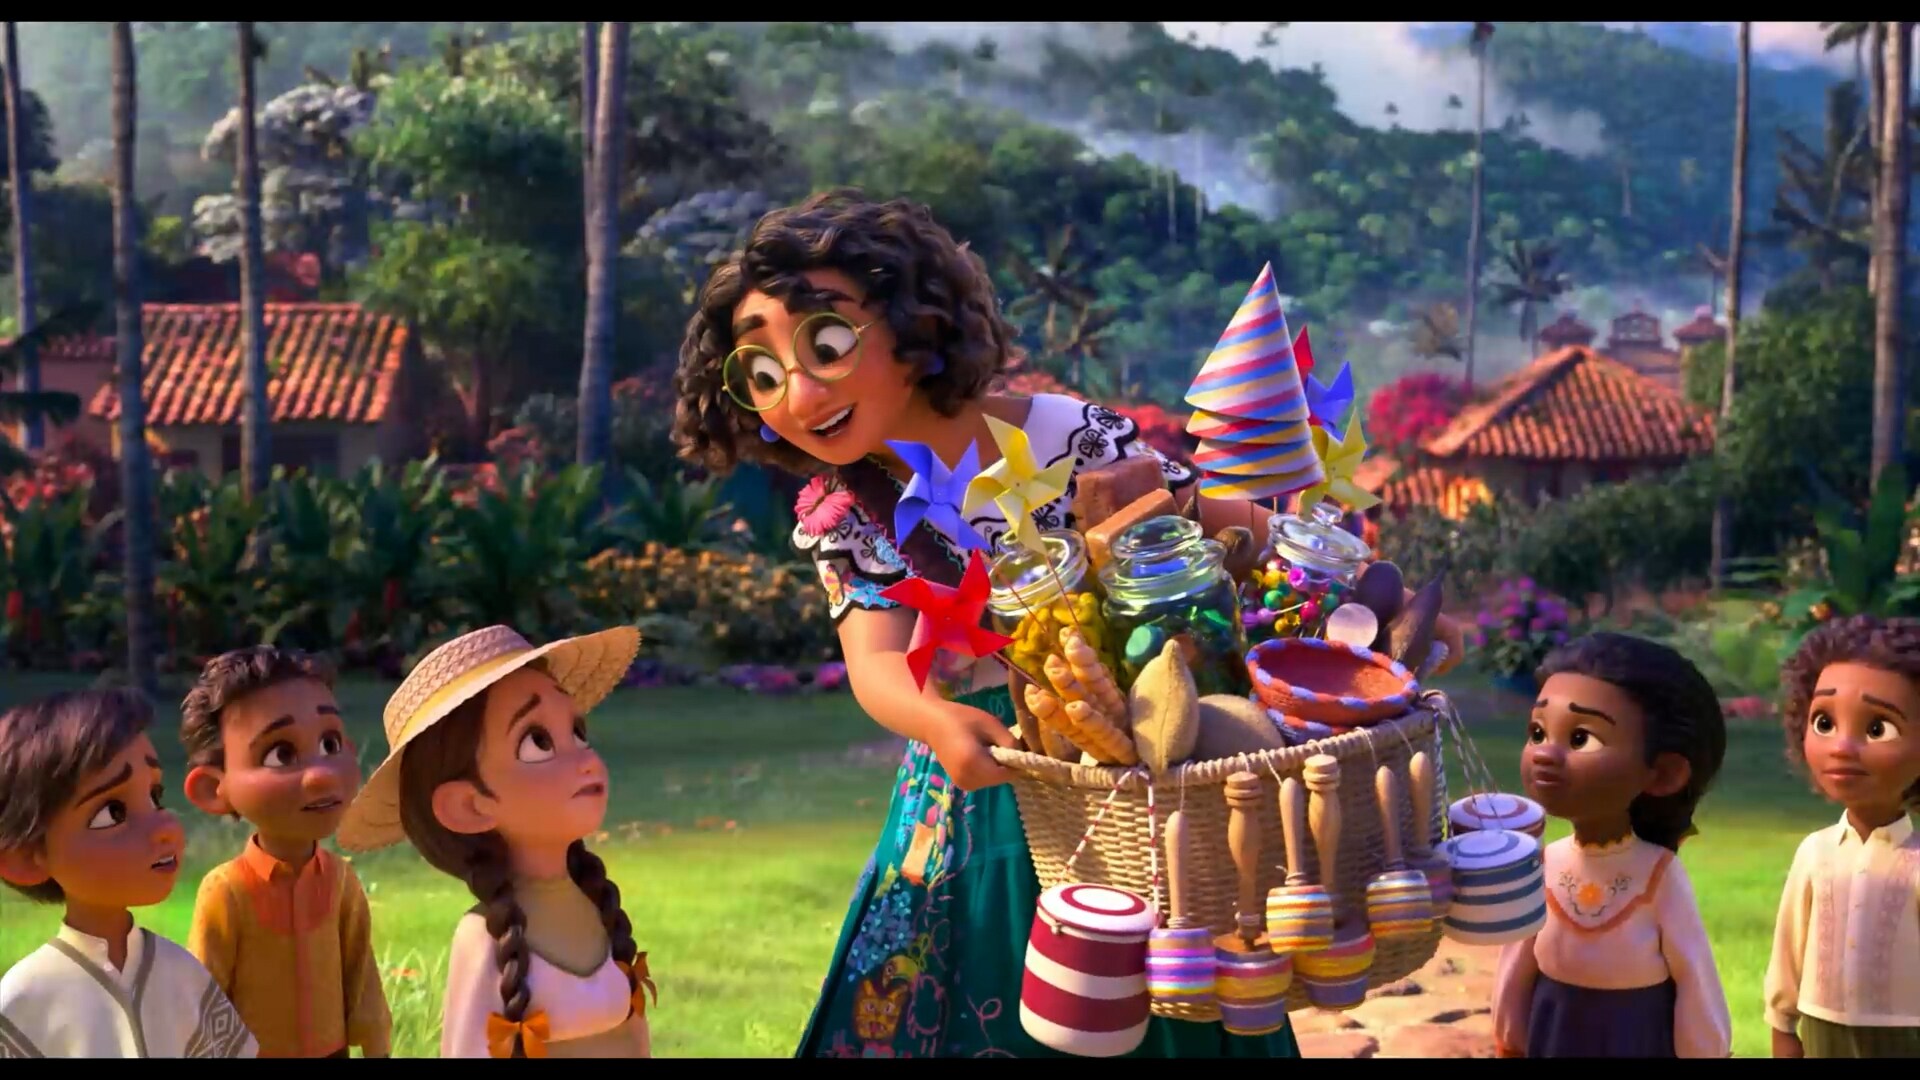 Encanto, la película animada de Disney que enaltece la magia de Colombia